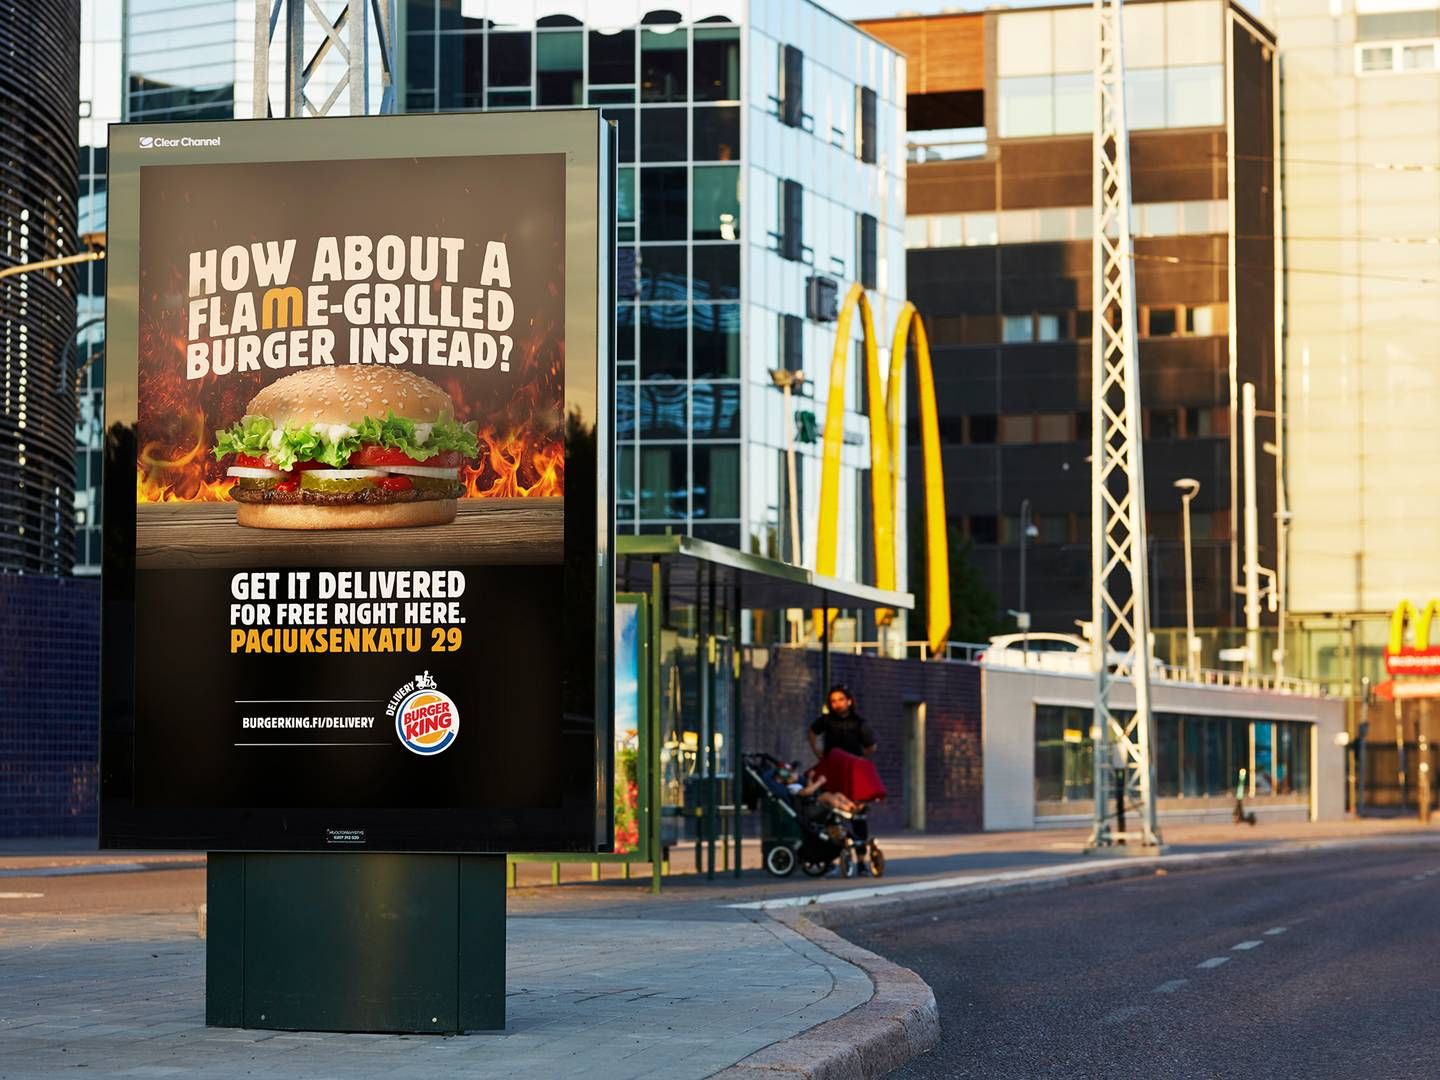 Foto: Pr / Burger King Finland